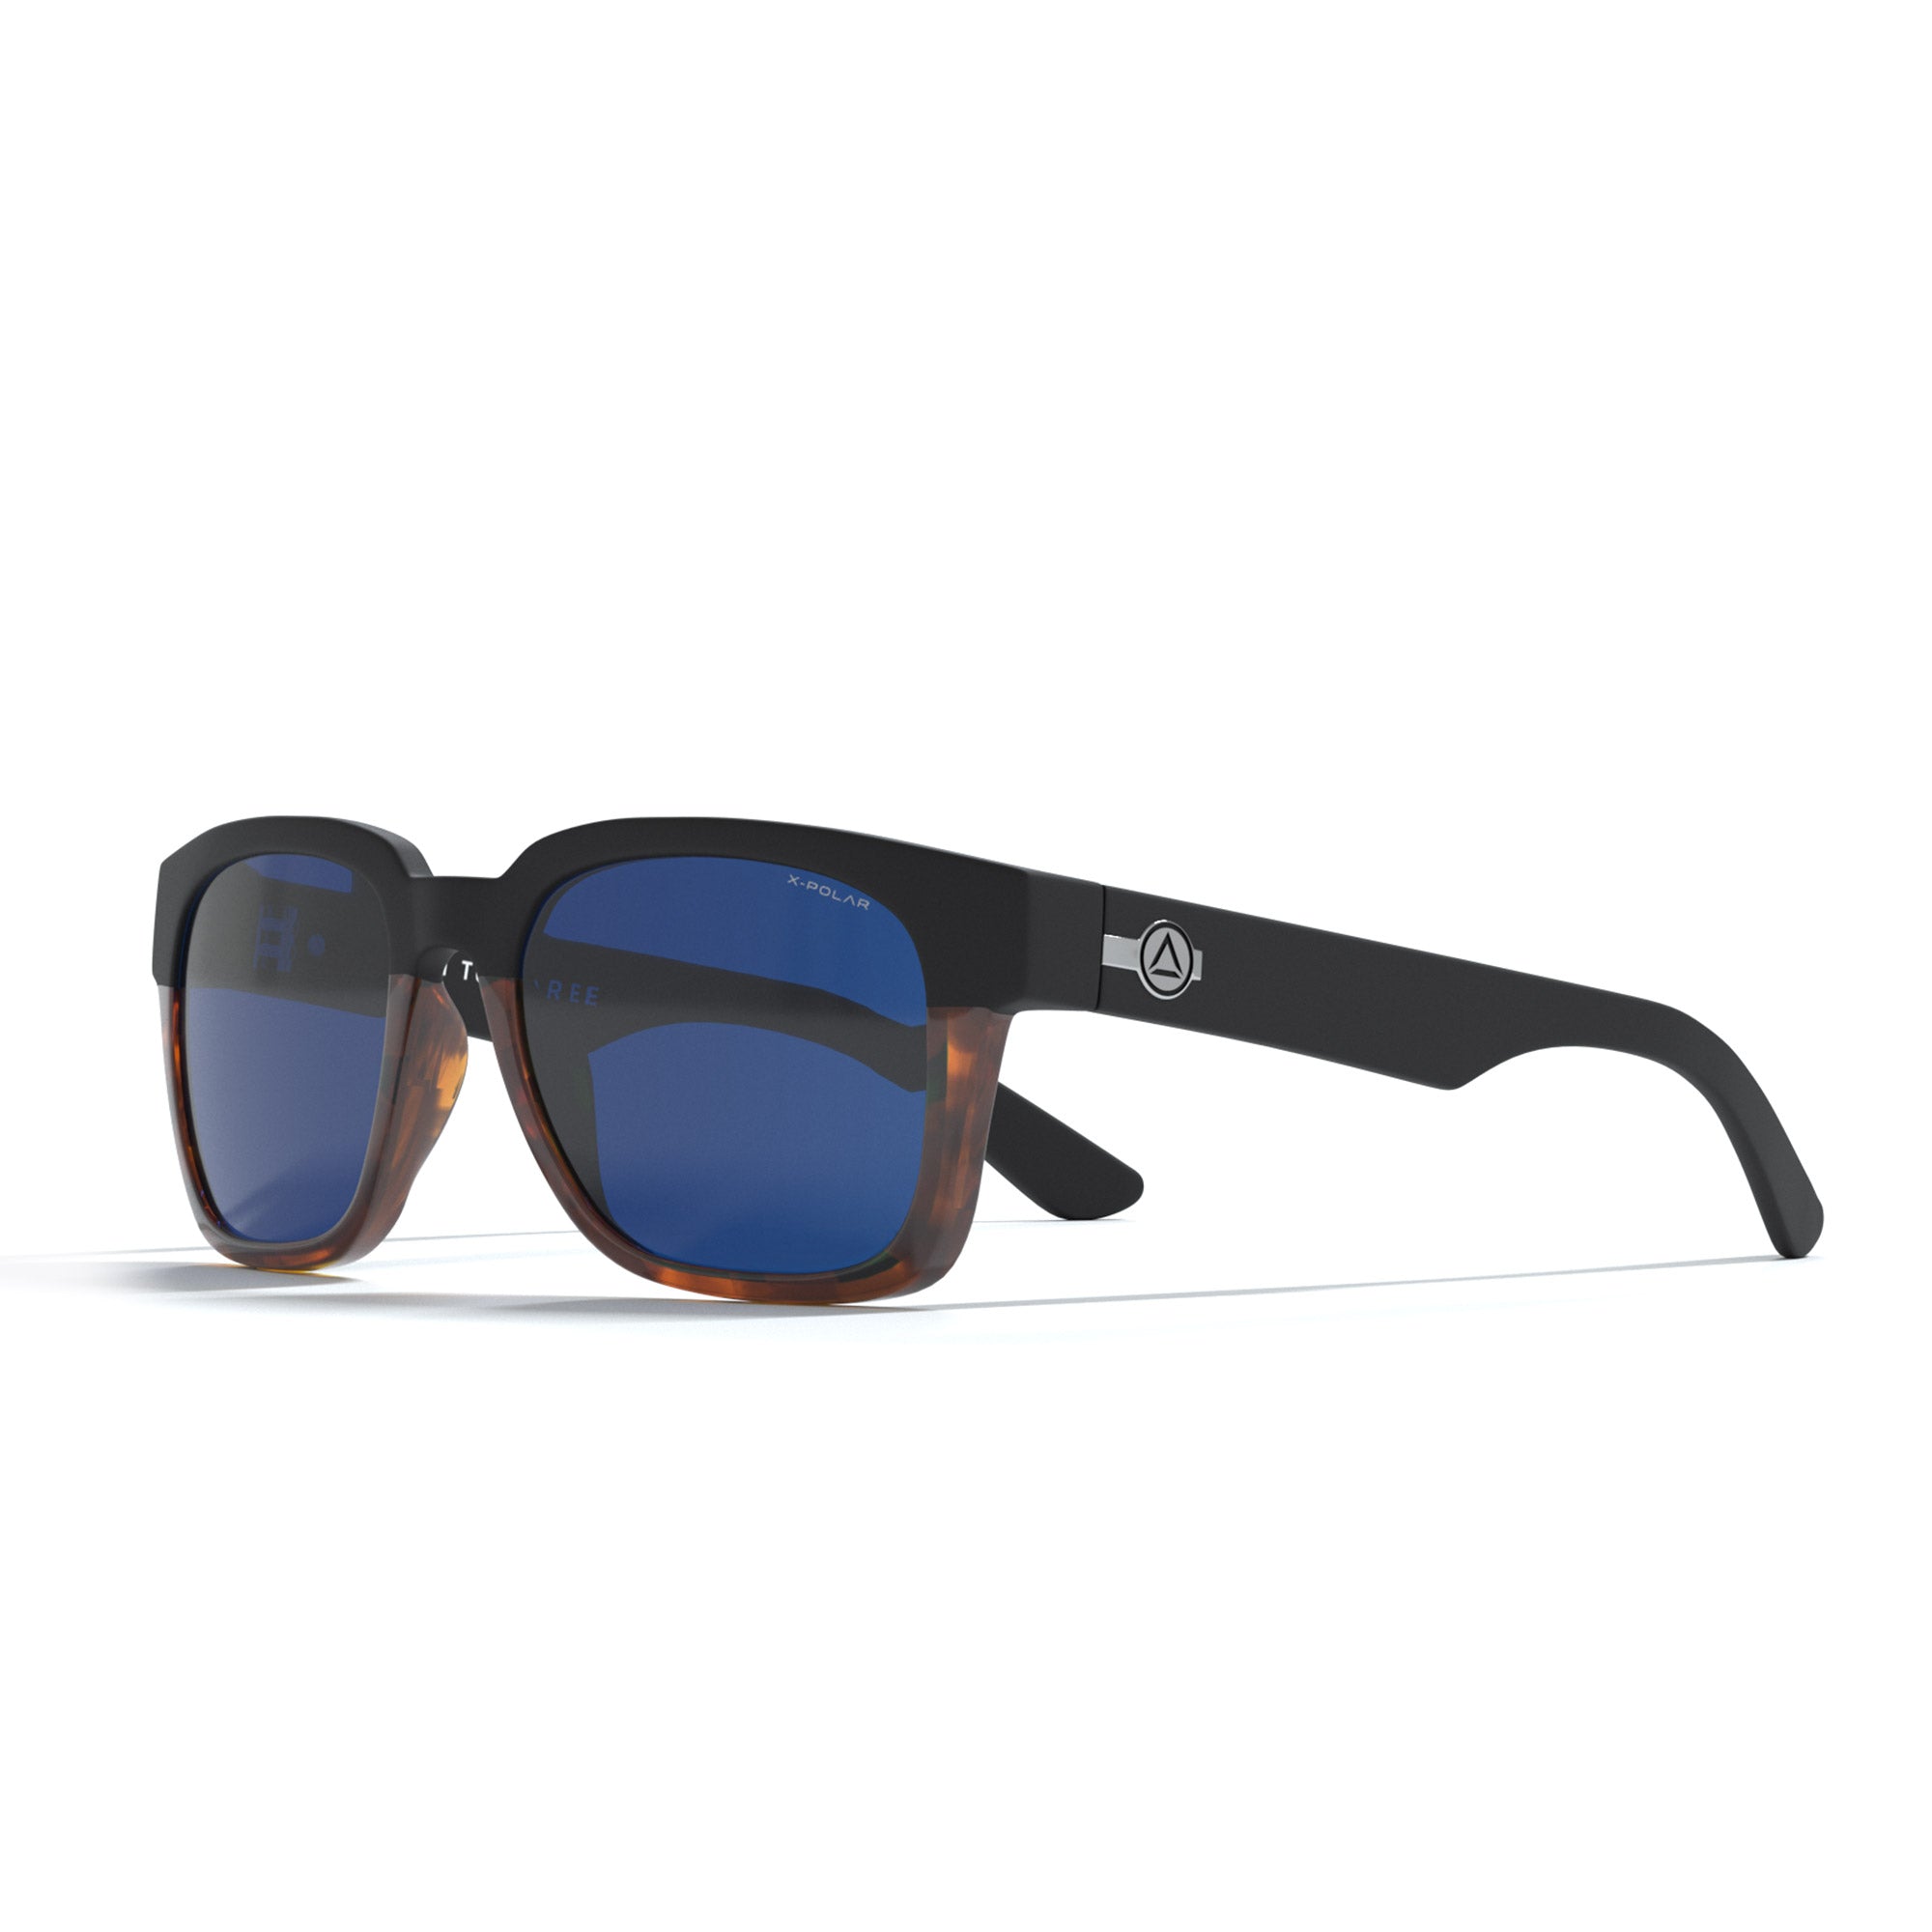 Gafas De Sol Uller Hookipa - Marrón/Azul marino  MKP